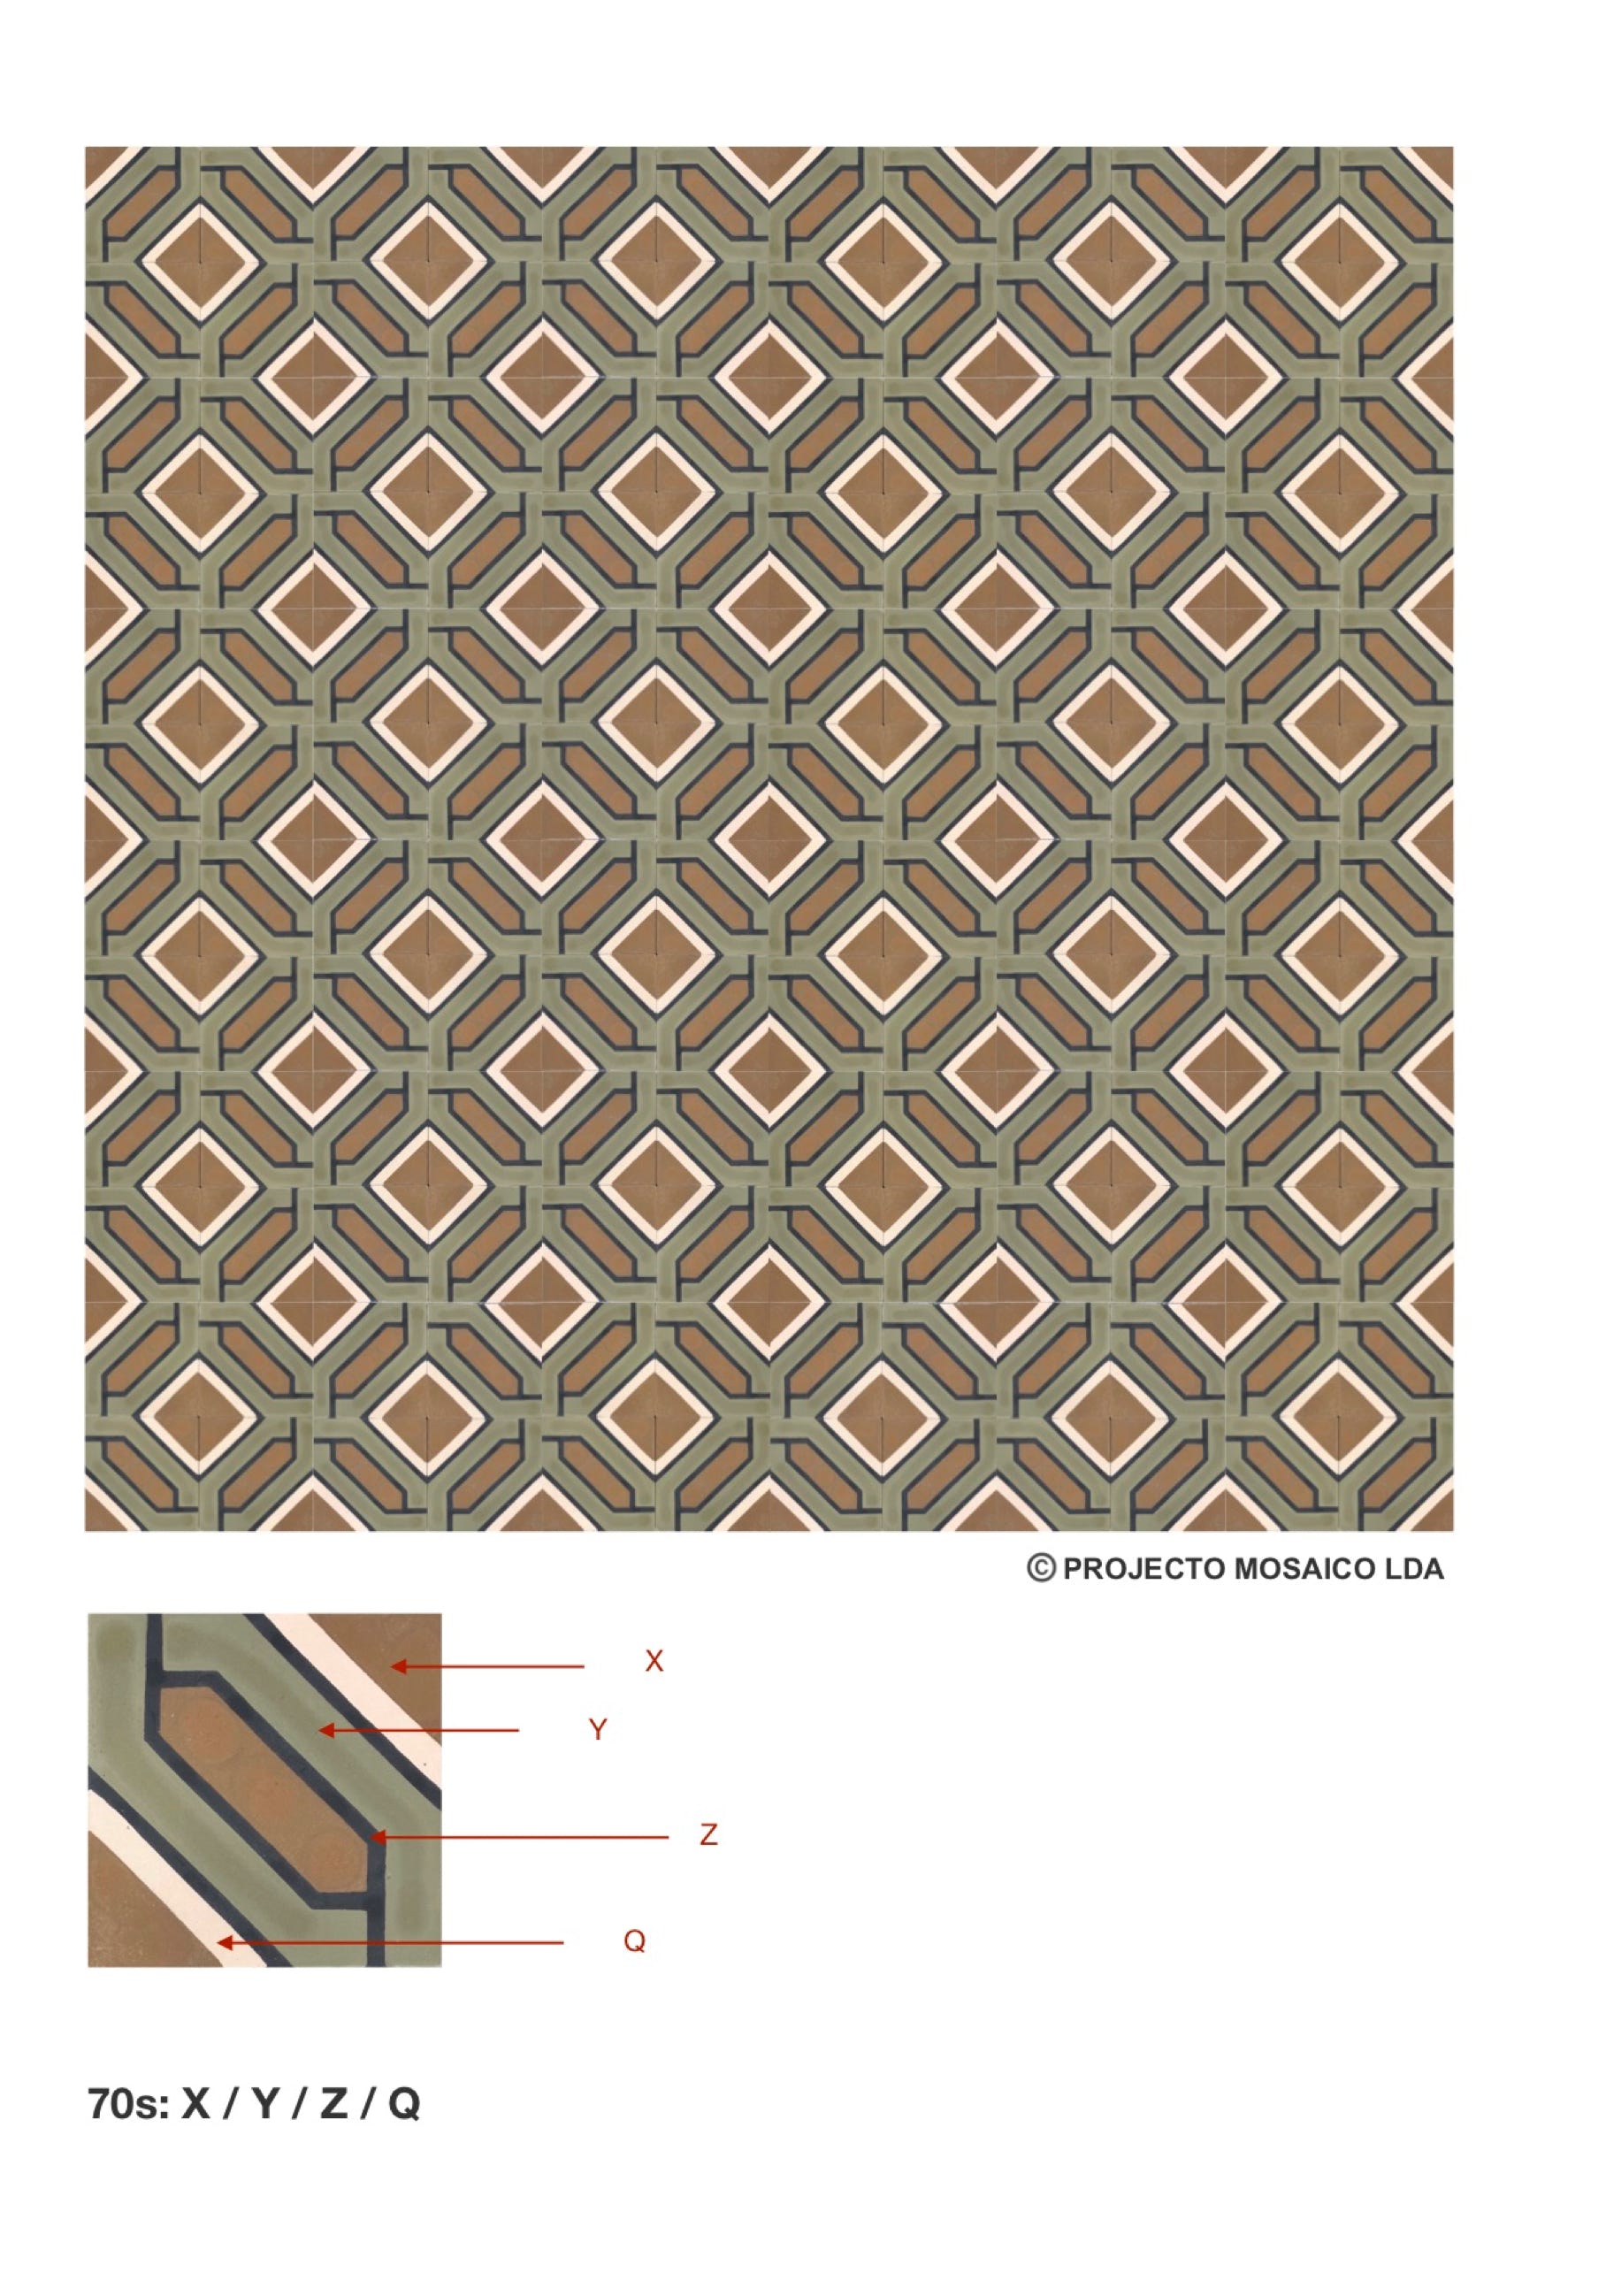 illustração de aplicação do mosaico hidráulico ref: 70s